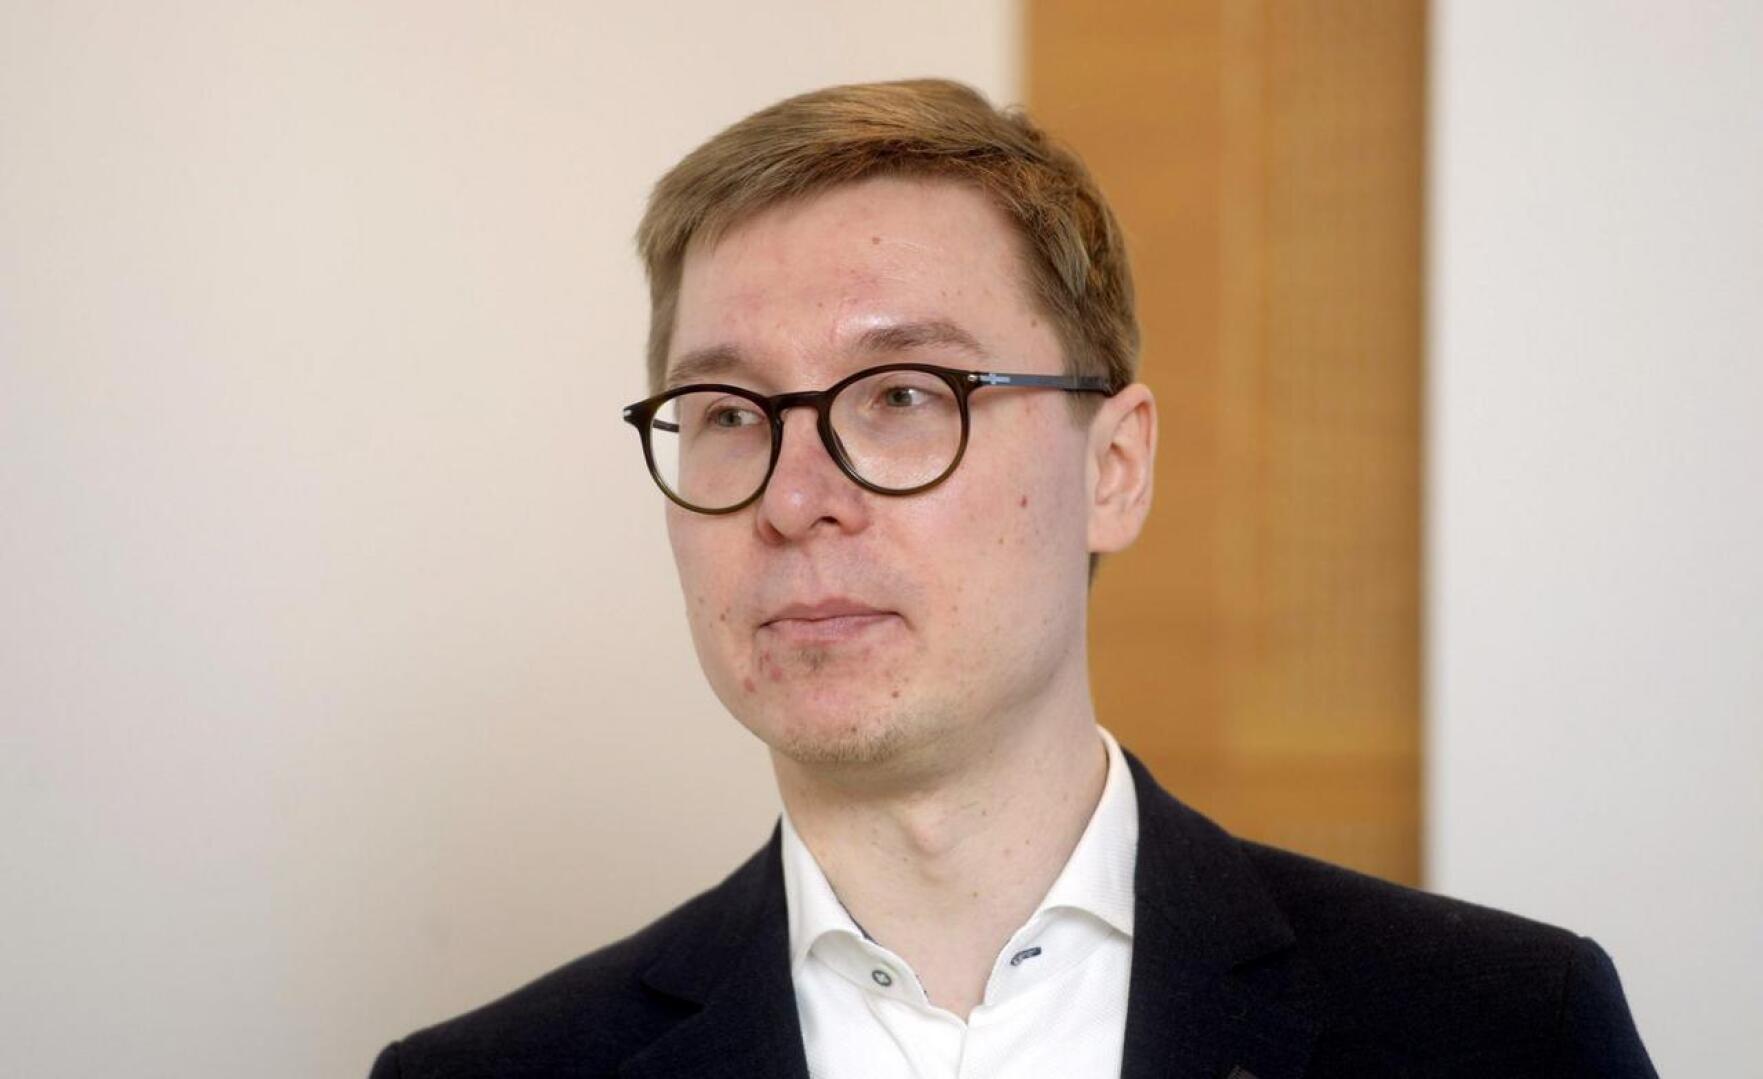 Nordean yksityistalouden ekonomisti Olli Kärkkäinen uskoo asuntolainojen kokonaiskorkojen nousevan Suomessa jo ensi keväänä.